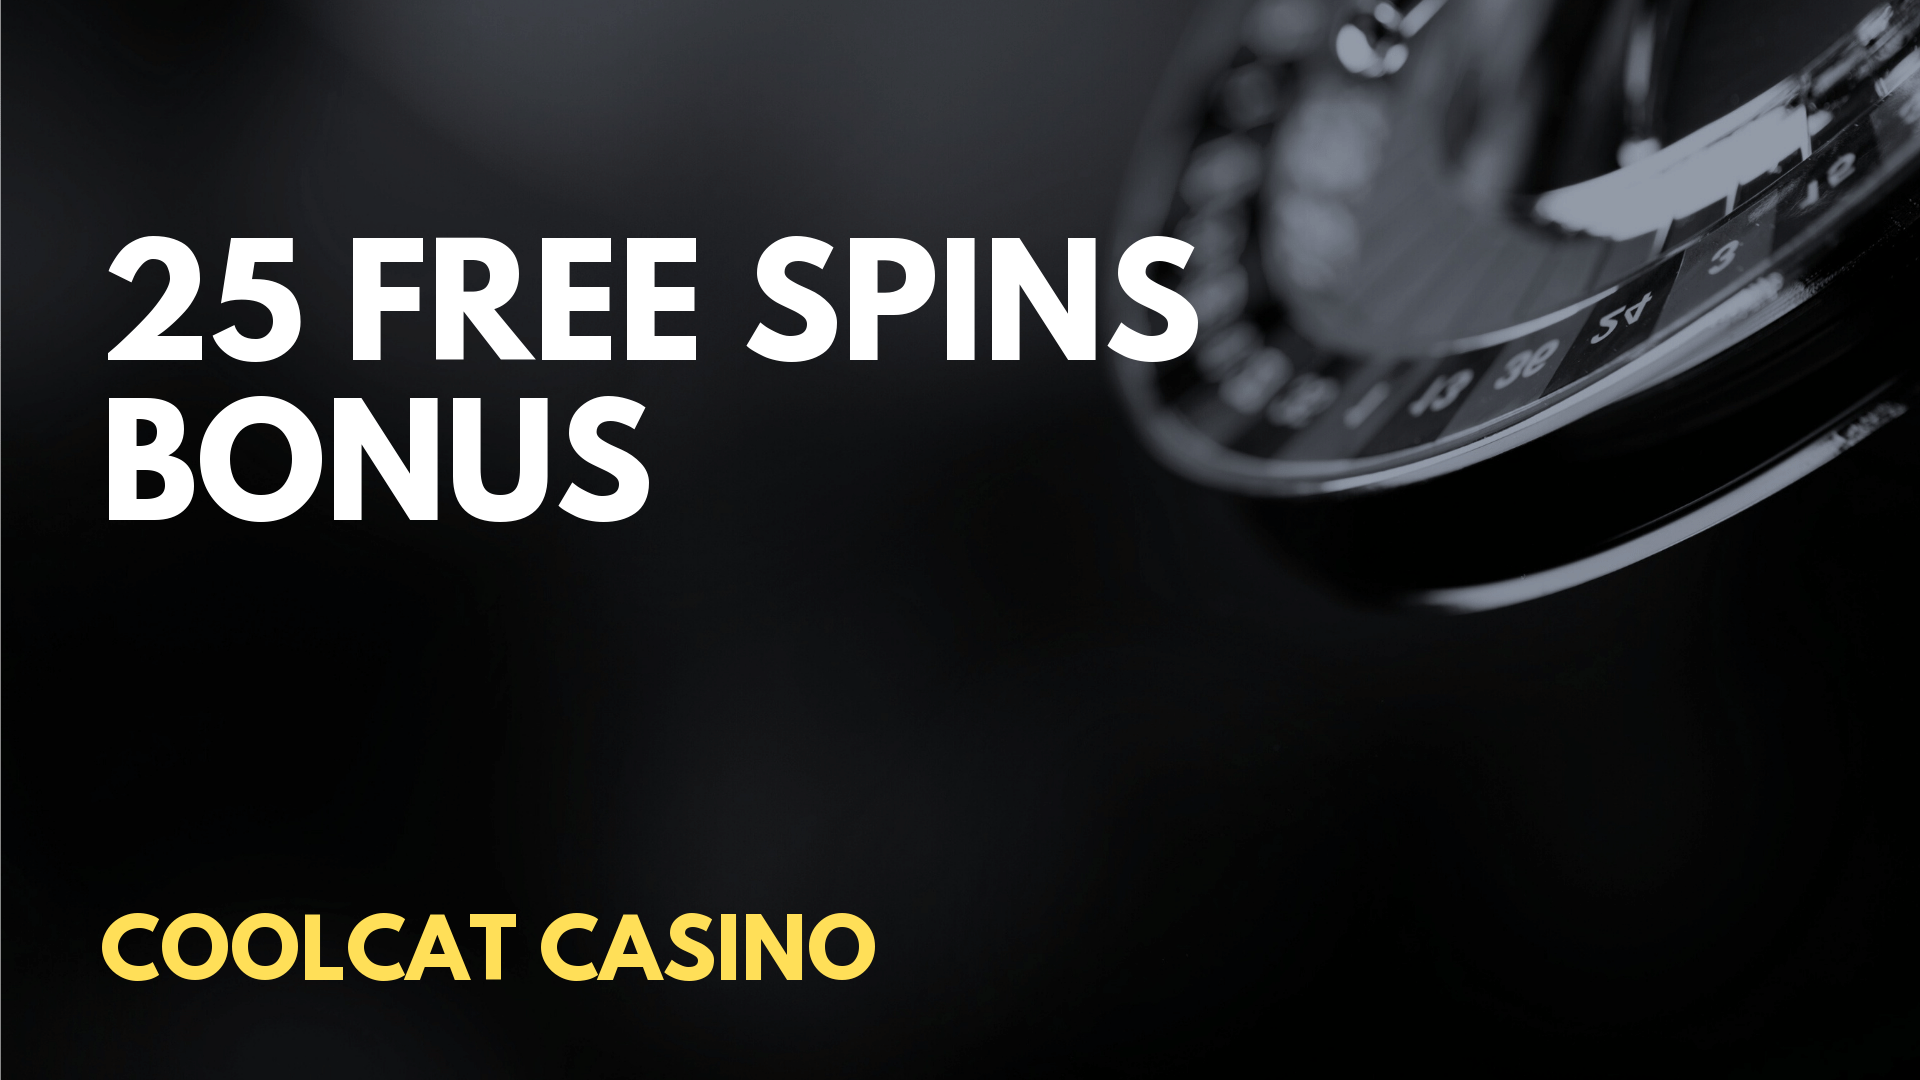 el royale casino $50 free spins no deposit